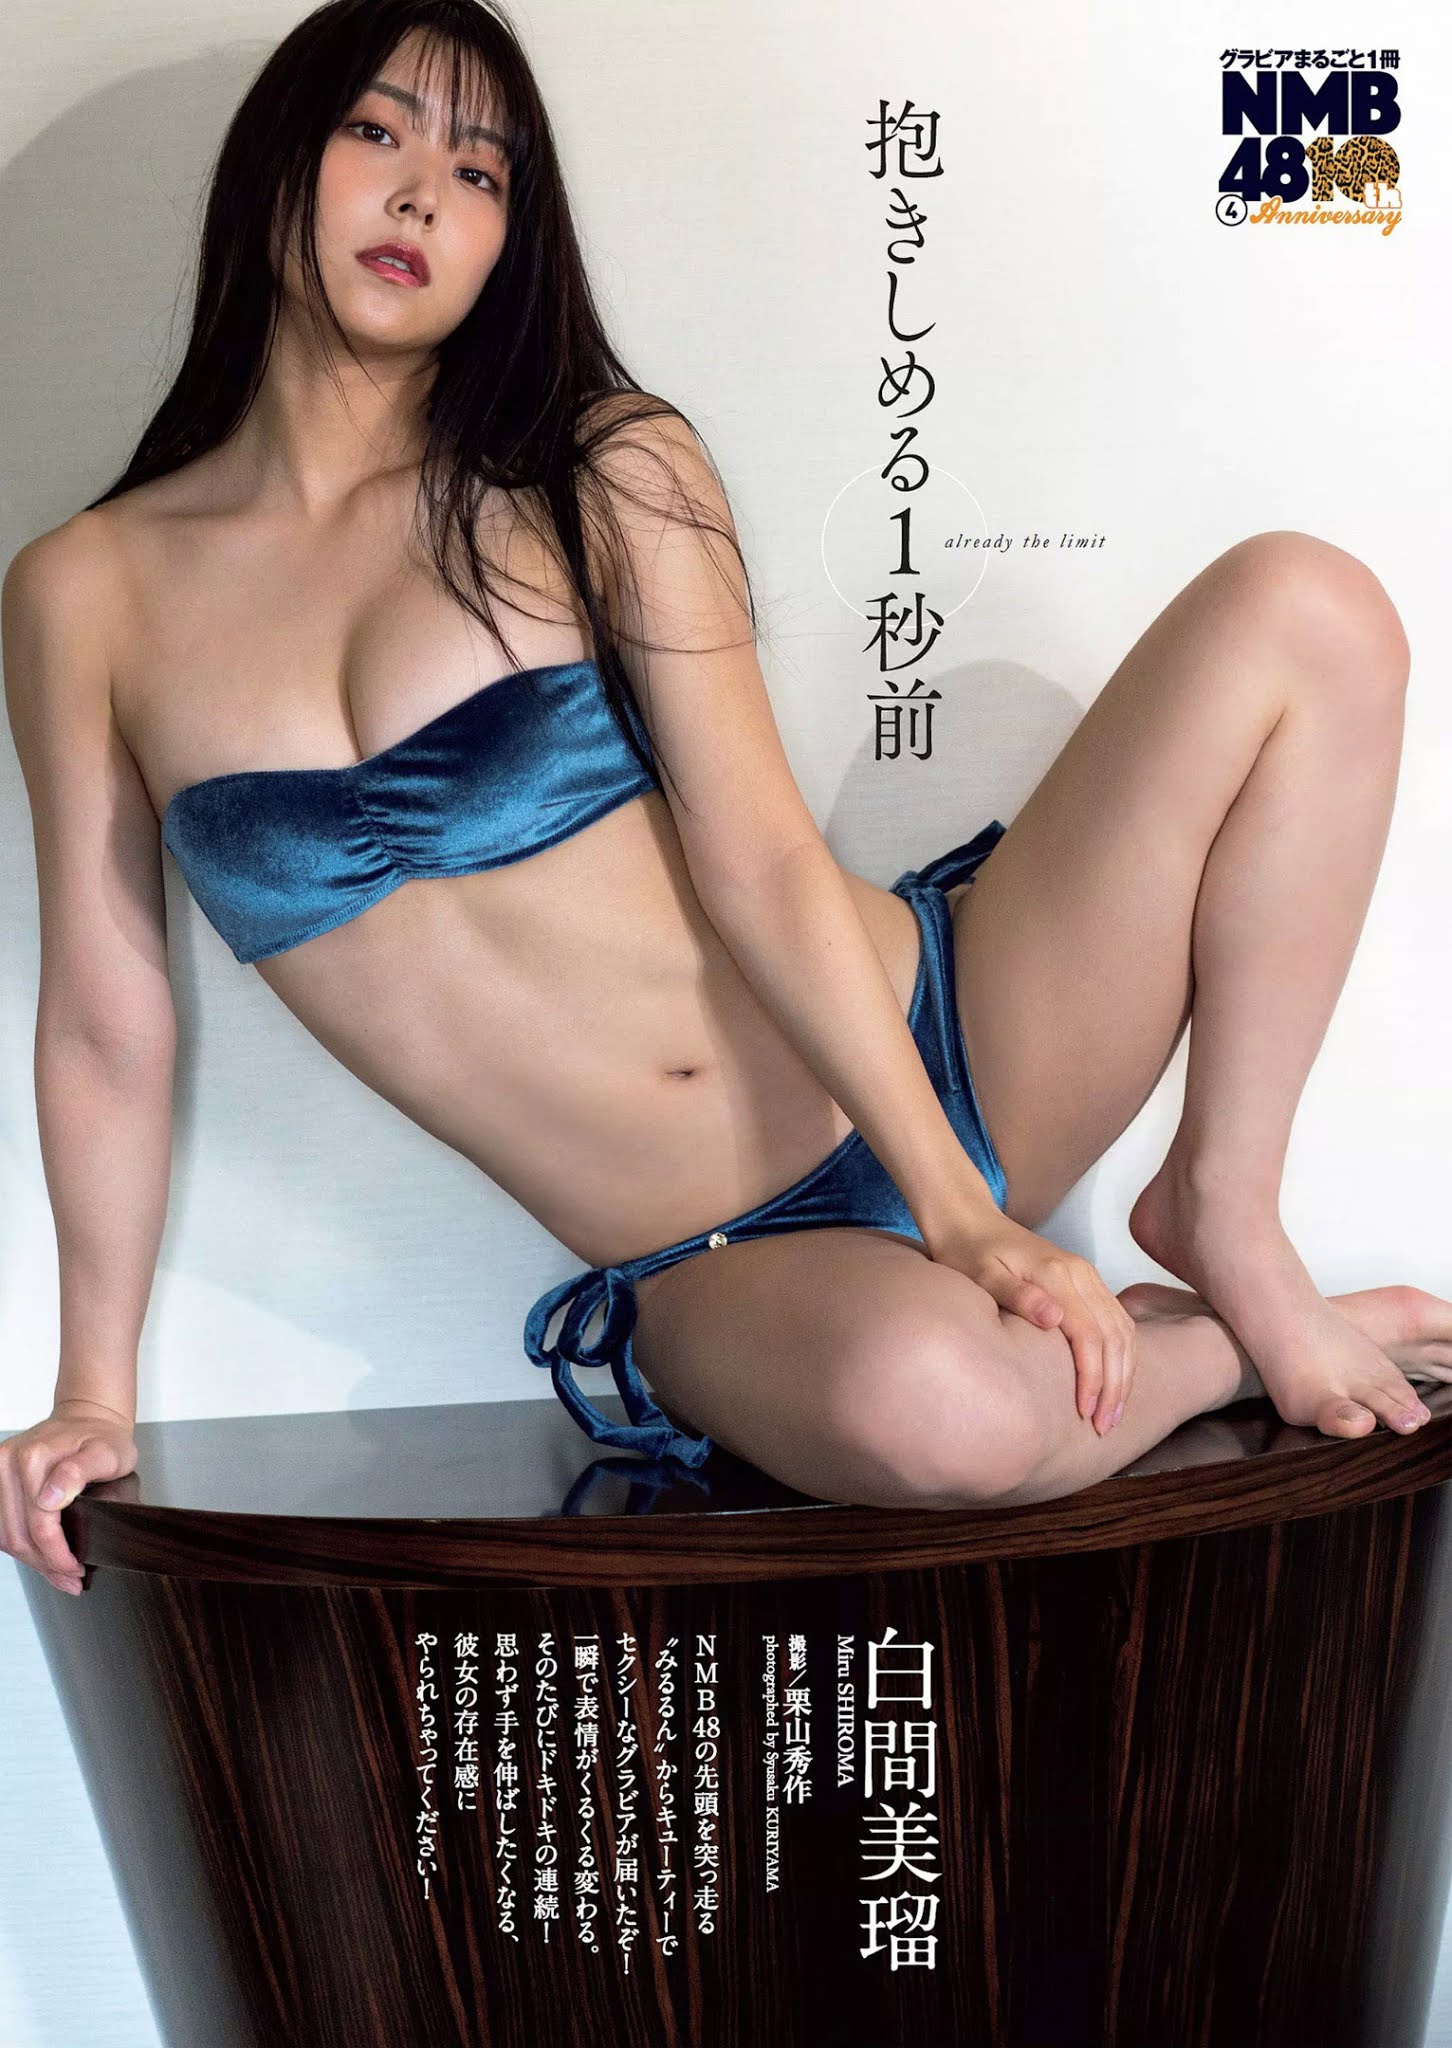 Miru Shiroma 白間美瑠, Weekly Playboy 2020 No.49 (週刊プレイボーイ 2020年49号)